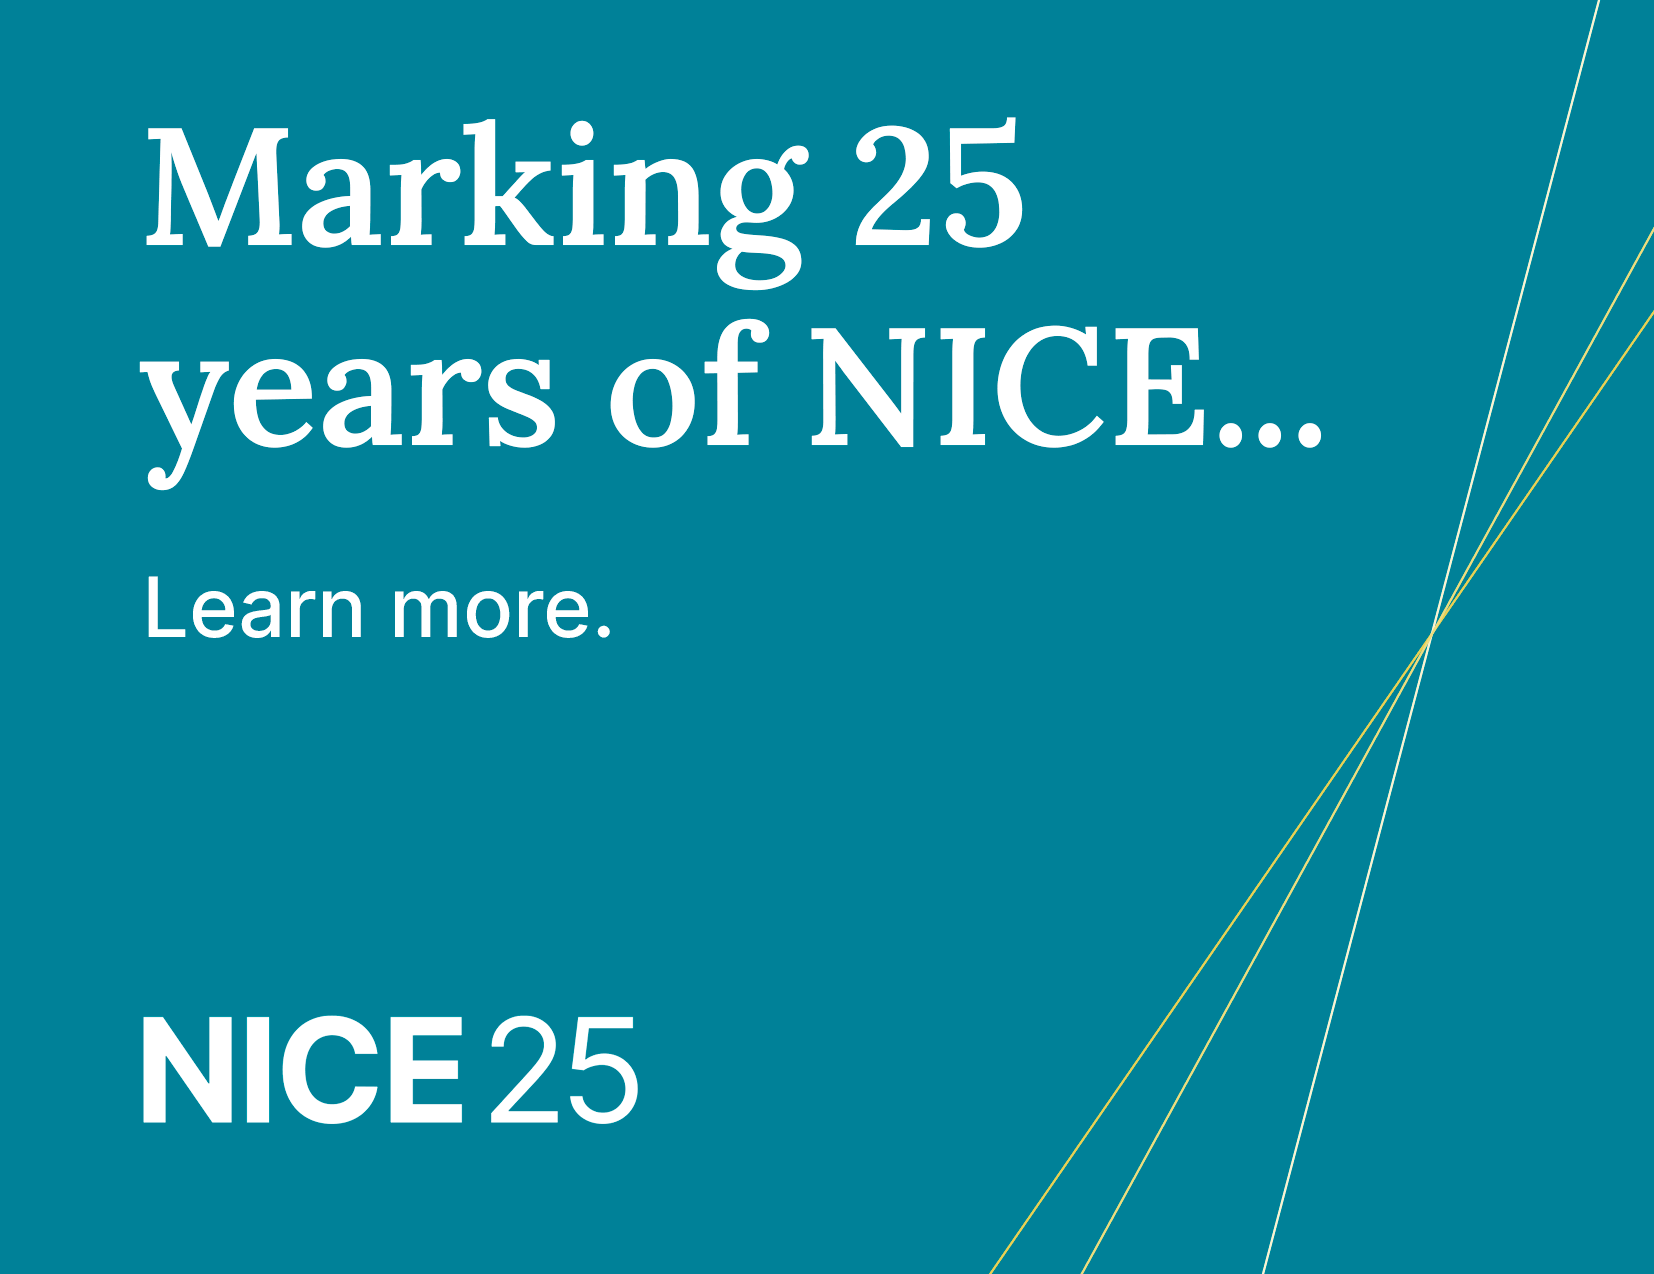 了解更多有关我们如何纪念NICE 25周年的信息